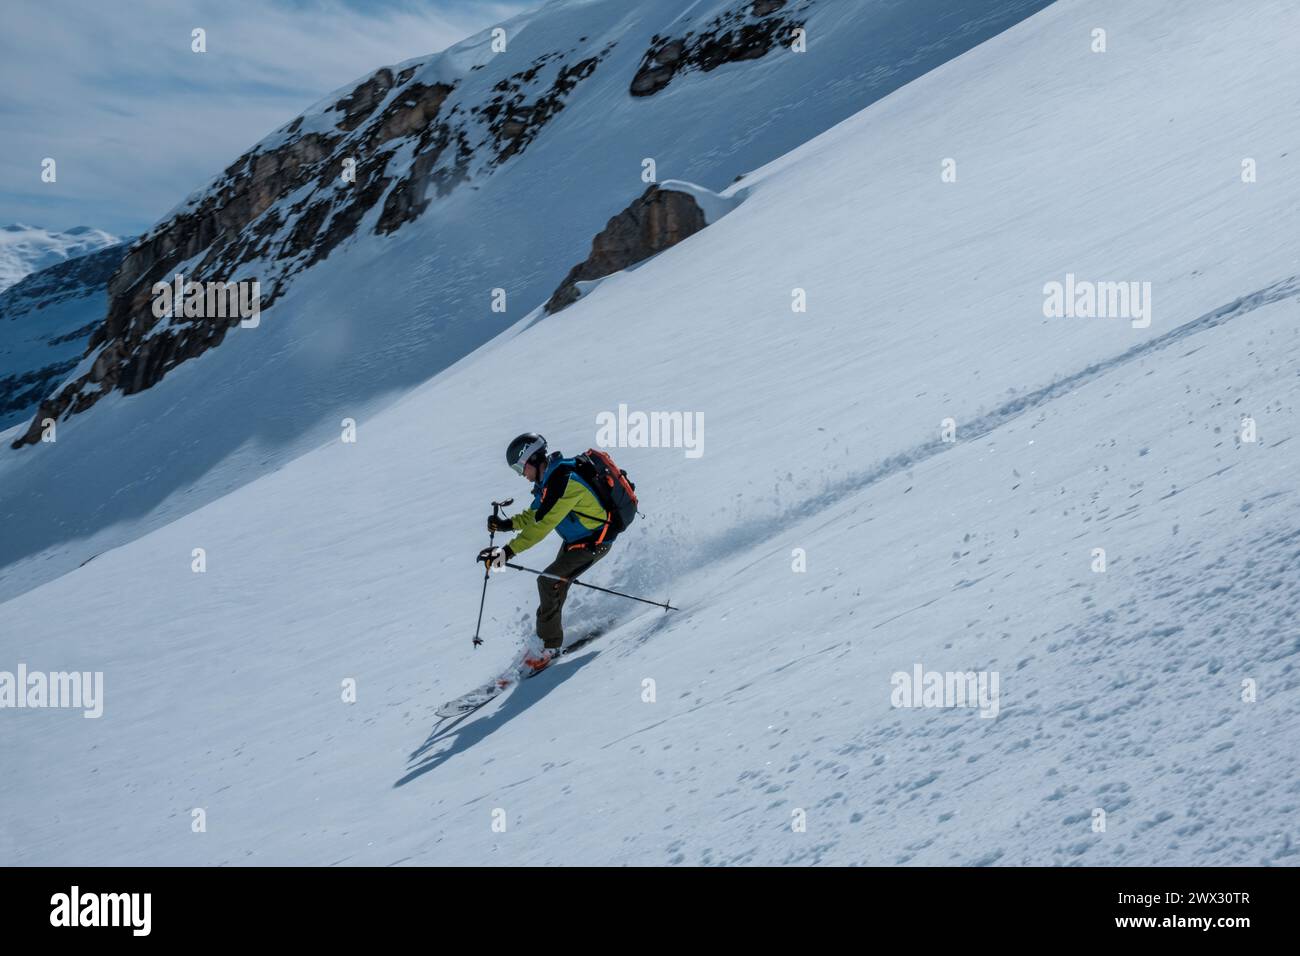 skier on ski tour downhill in powder snow Stock Photo